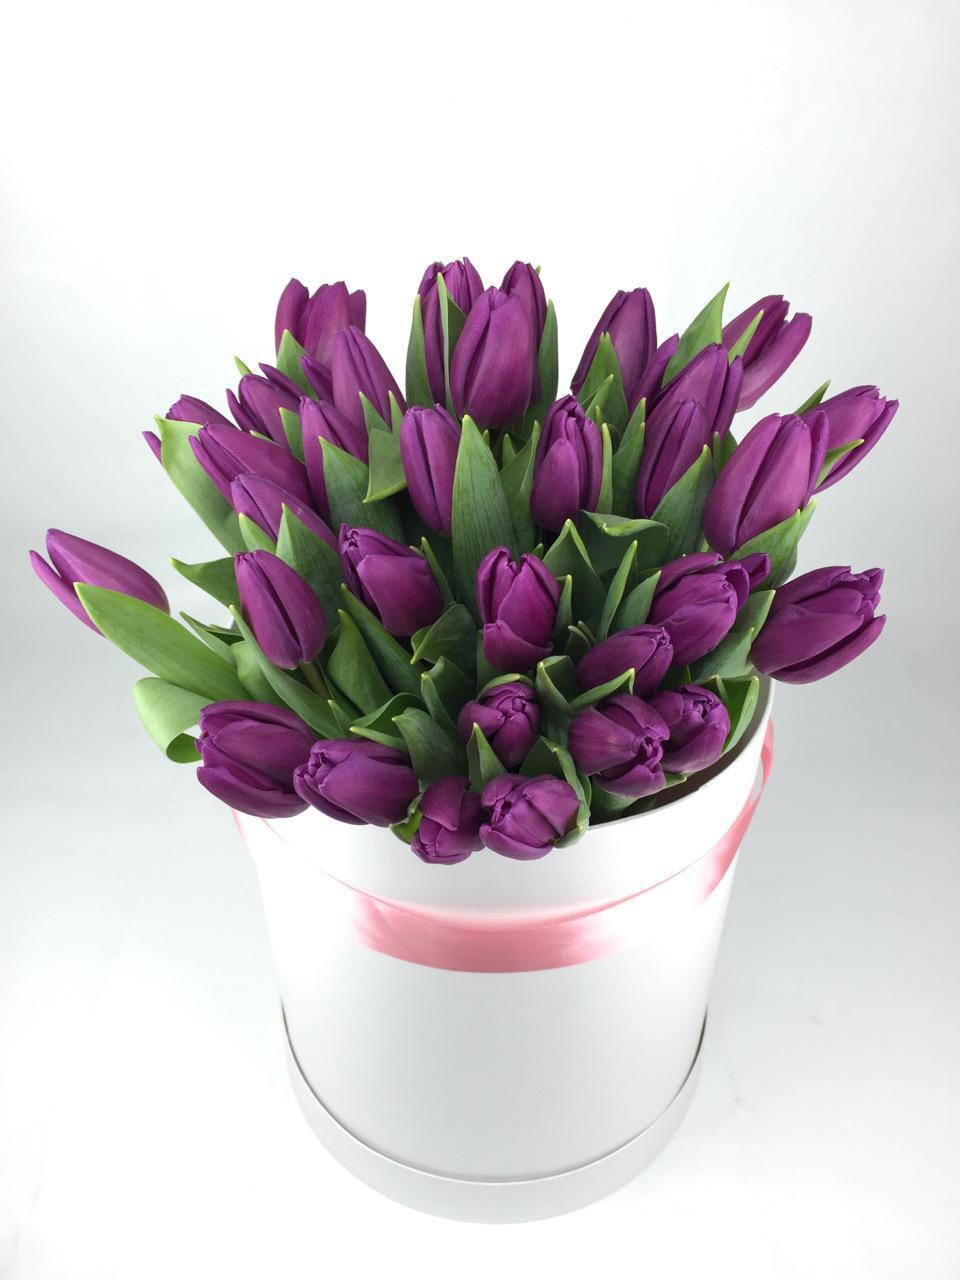 Фиолетовые тюльпаны к чему. Тюльпаны в коробке. Фиолетовые тюльпаны в коробке. Букет фиолетовых тюльпанов в коробке. Коробка с тюльпанами фиолетовый.